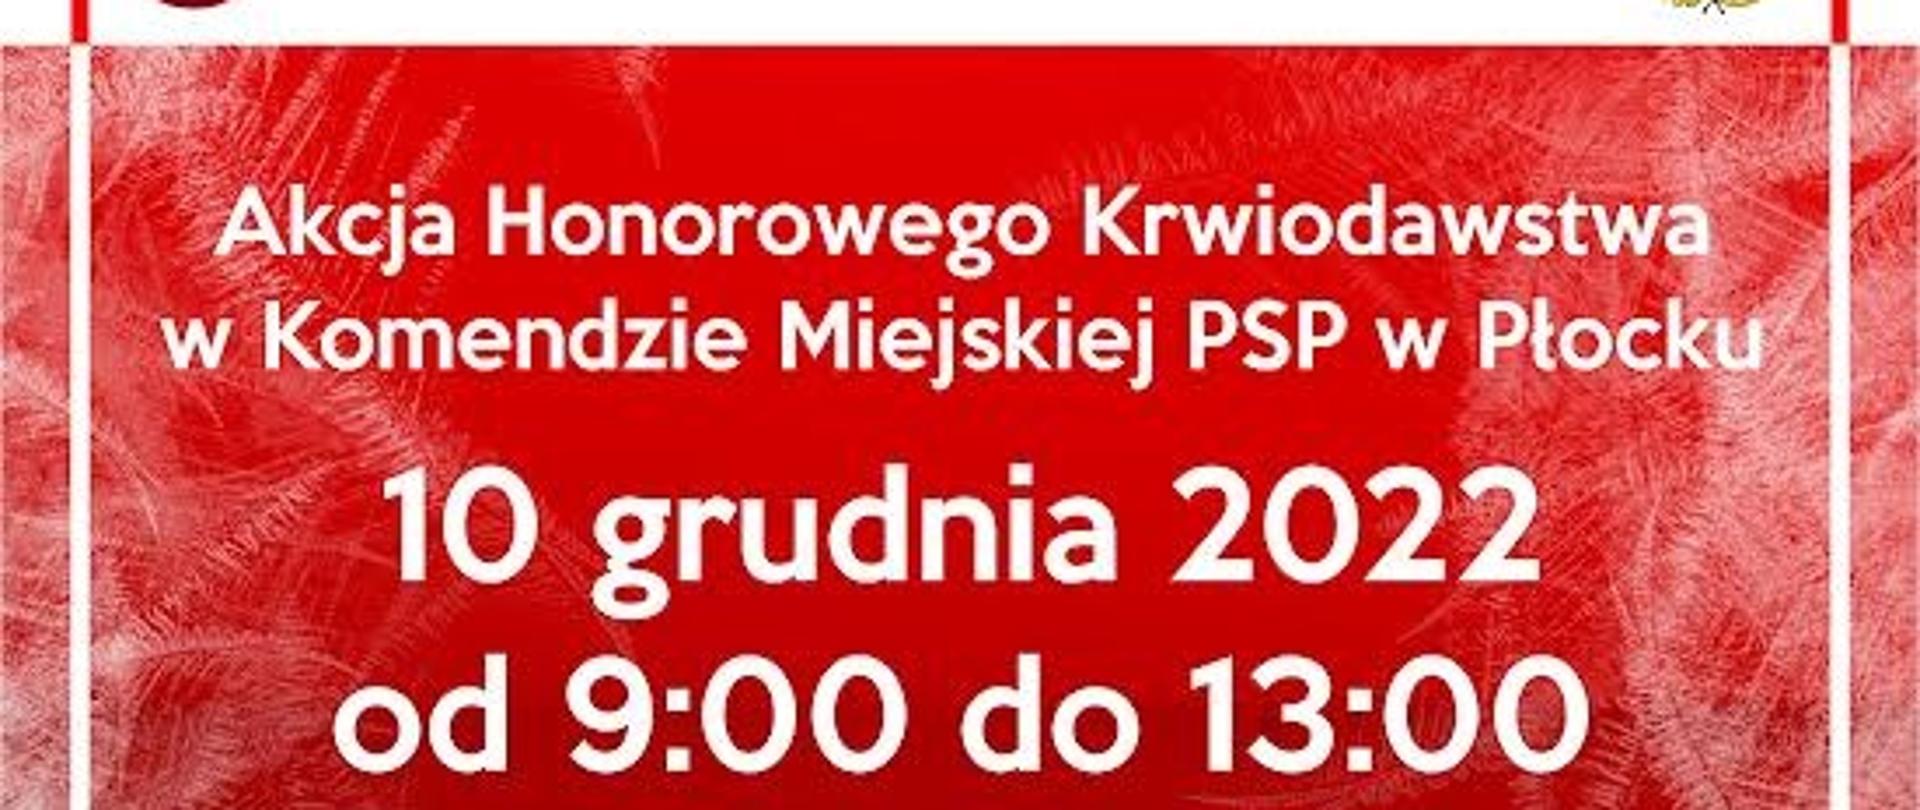 Plakat przedstawia akcję honorowego krwiodawstwa w Komendzie Miejskiej w Płocku, która odbędzie się w dniu 10 grudnia.2022 r.